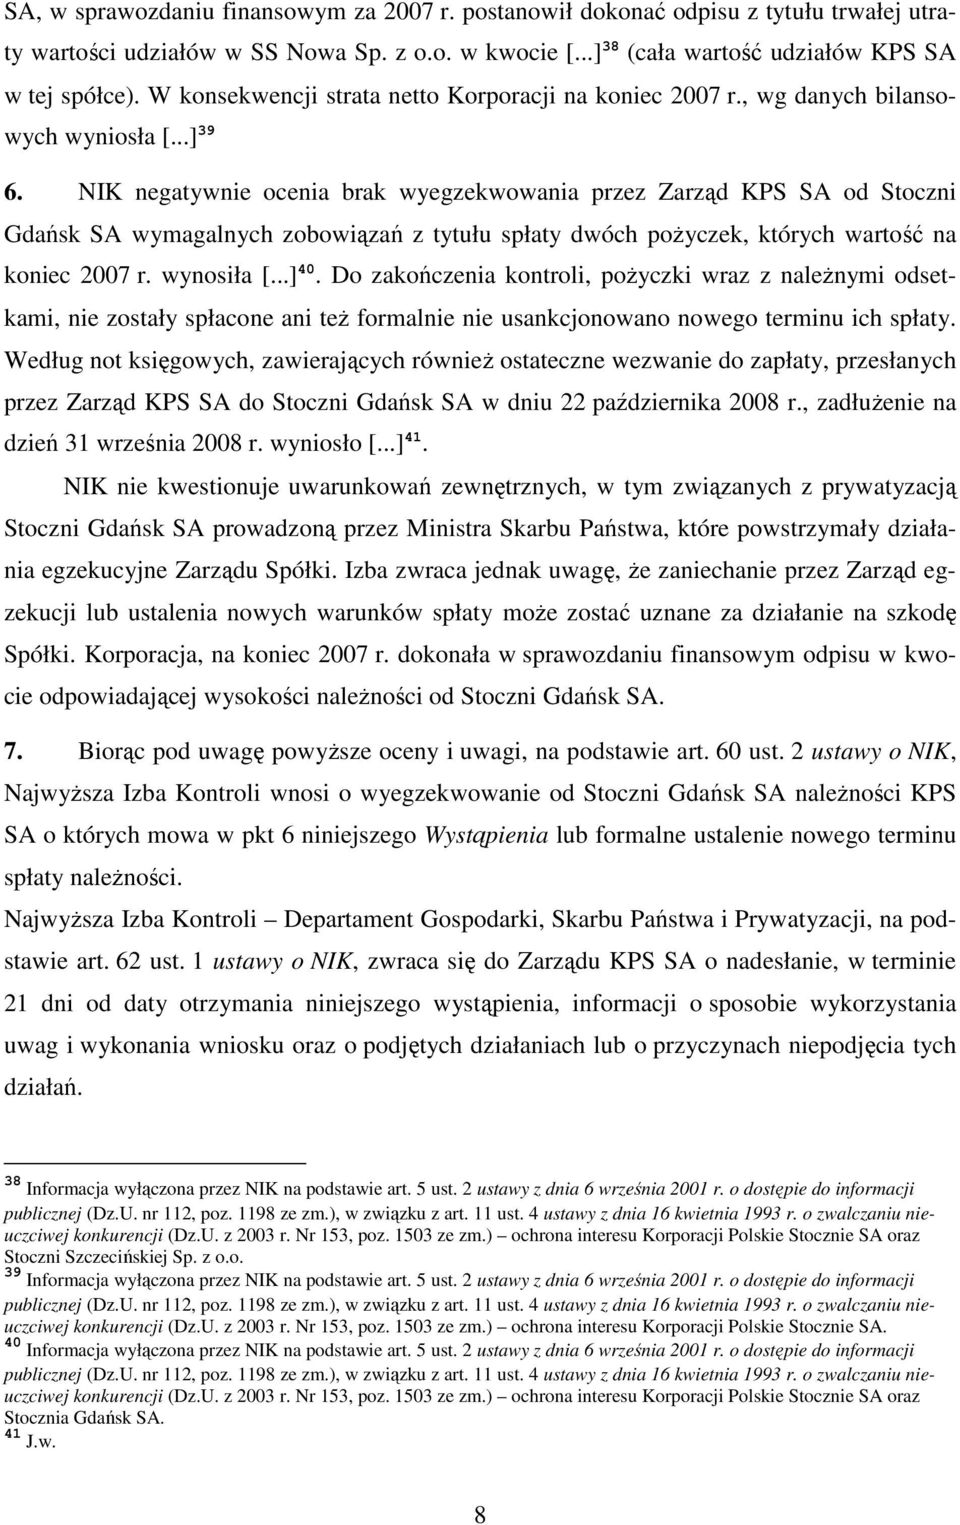 NIK negatywnie ocenia brak wyegzekwowania przez Zarząd KPS SA od Stoczni Gdańsk SA wymagalnych zobowiązań z tytułu spłaty dwóch poŝyczek, których wartość na koniec 2007 r. wynosiła [...] 40.